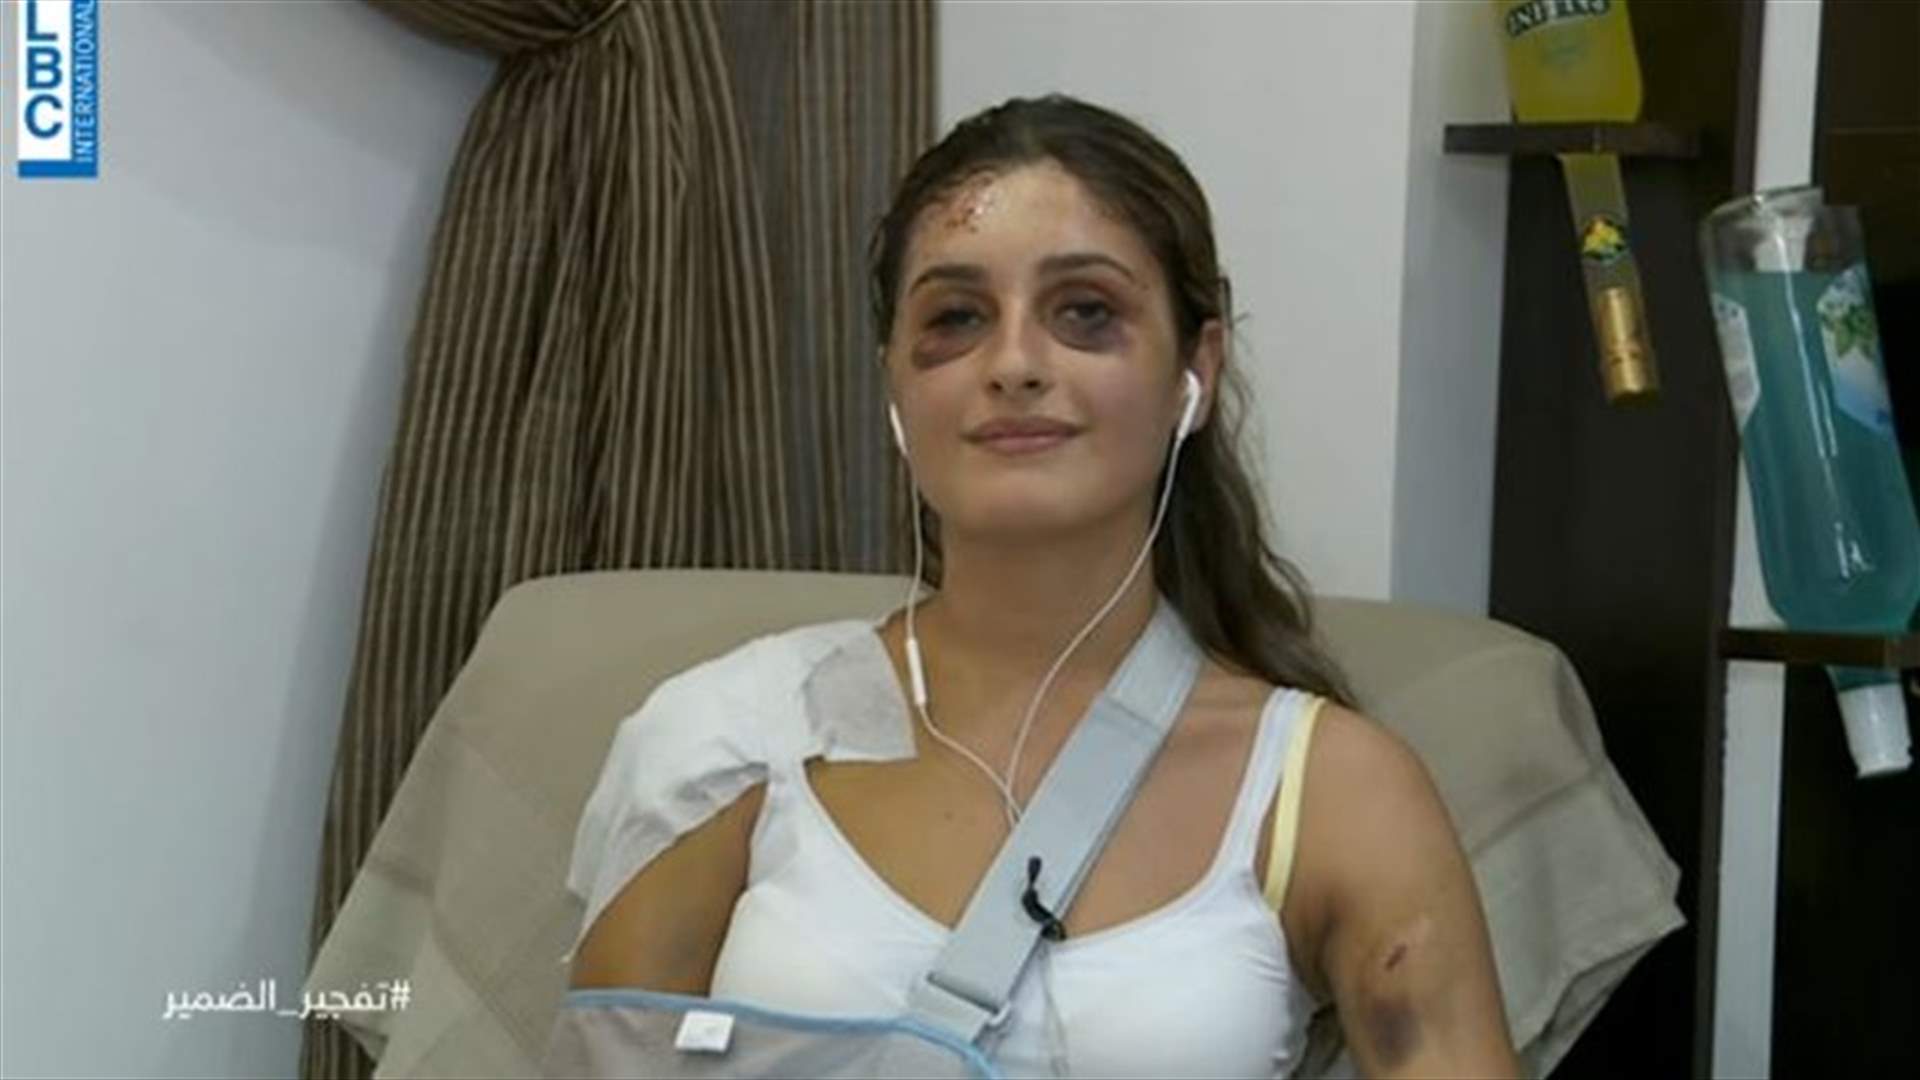 الشابة كريستيل مطر تروي قصّة نجاتها بأعجوبة من انفجار بيروت (فيديو)